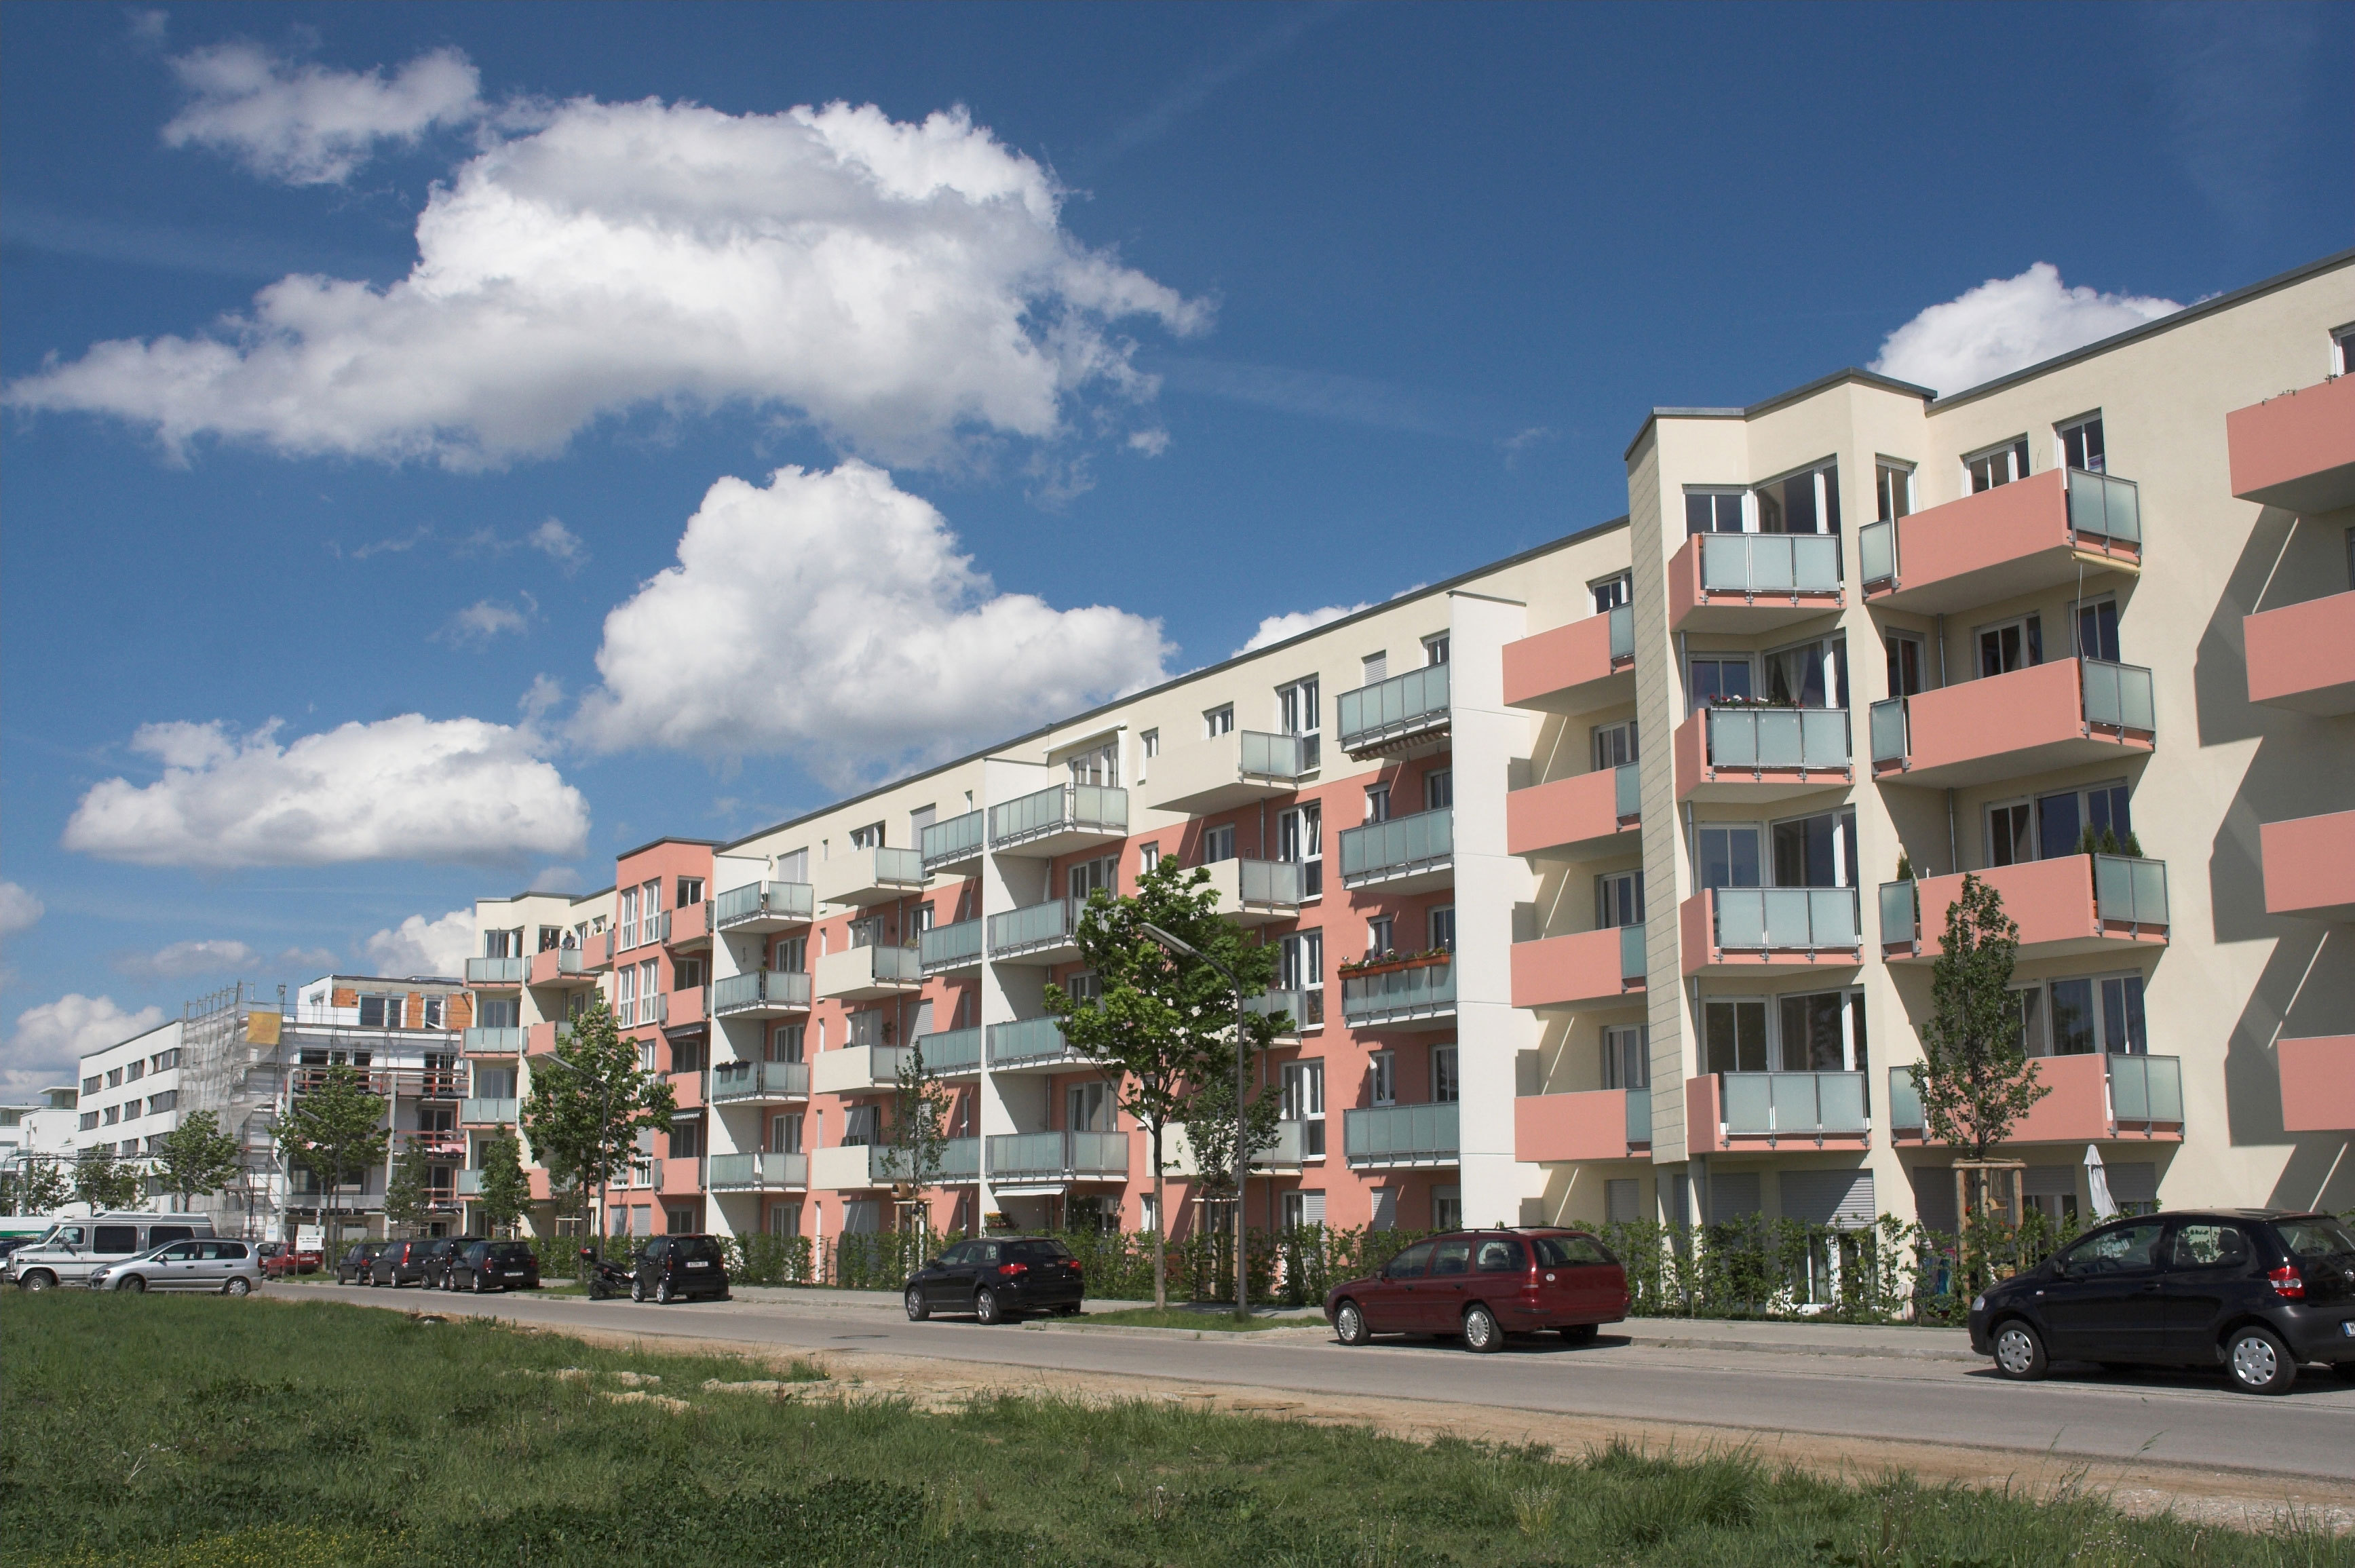 Caut Coleg Apartament - Imobiliare în Bucuresti - tdvauto.ro